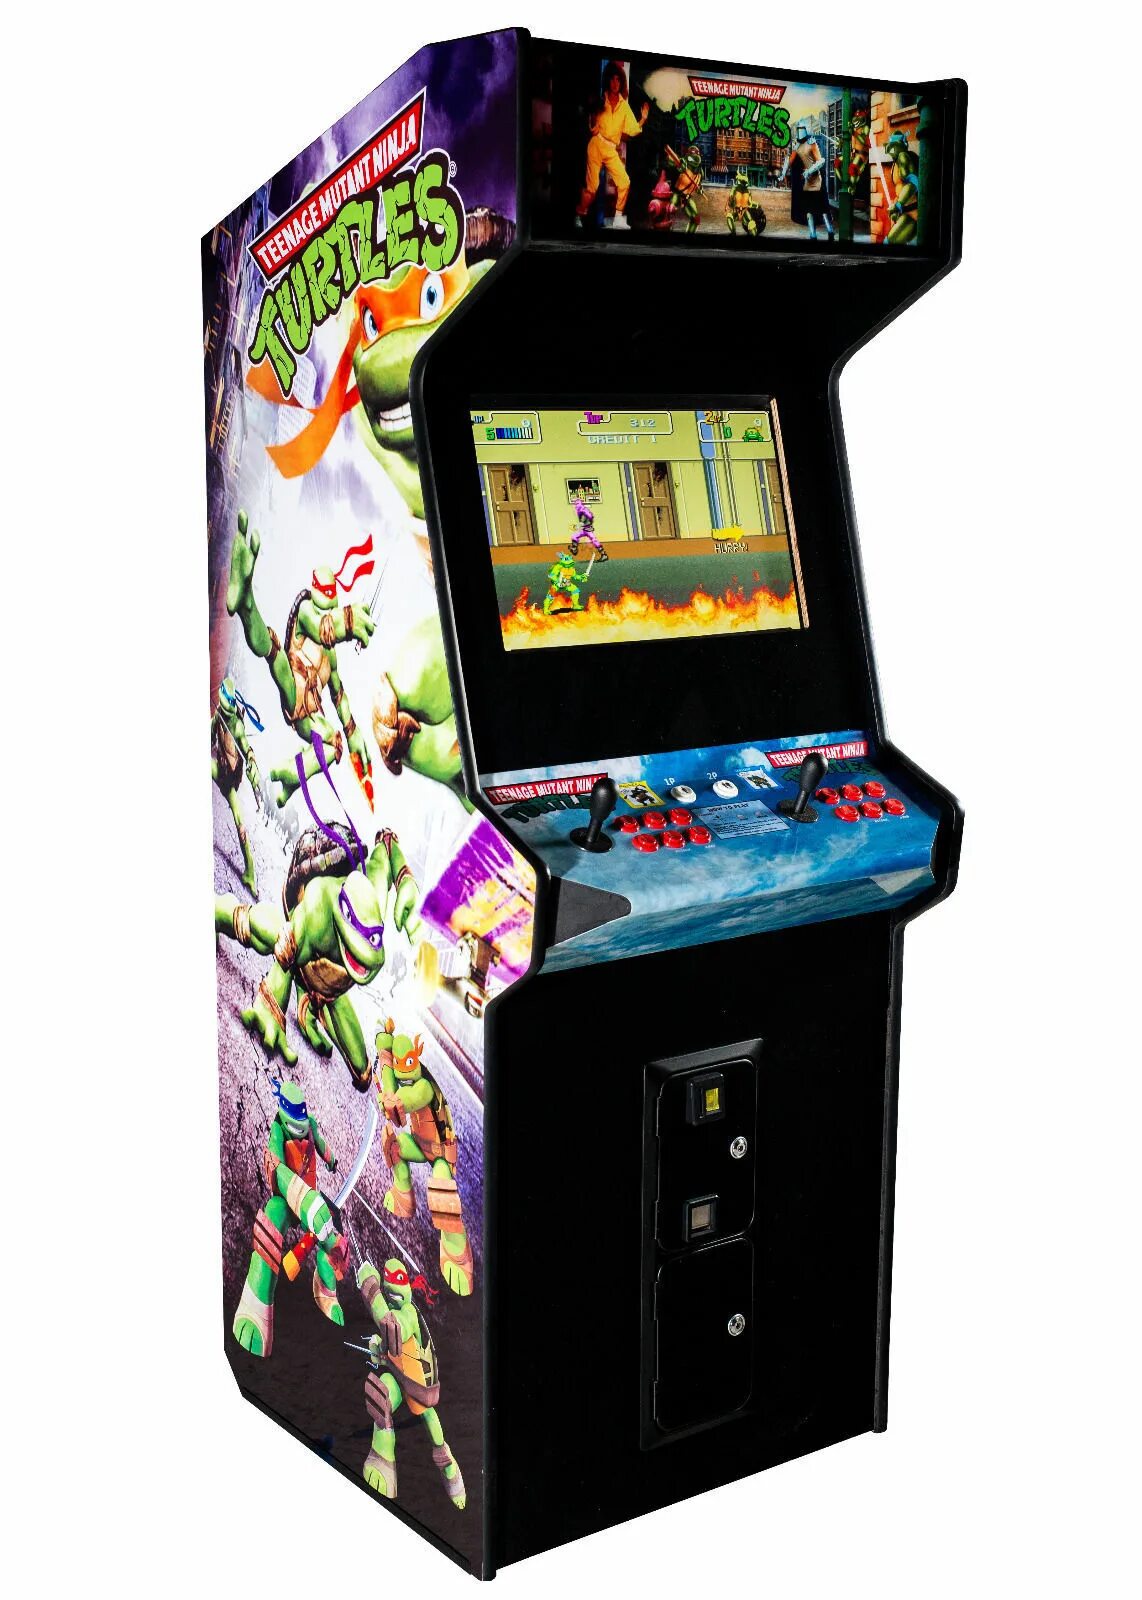 Донки Конг мини игровой автомат. «Дуплет» – игровой автомат. Черепашки ниндзя аркадный автомат. Аркадный автомат с Соником. Tmnt arcade